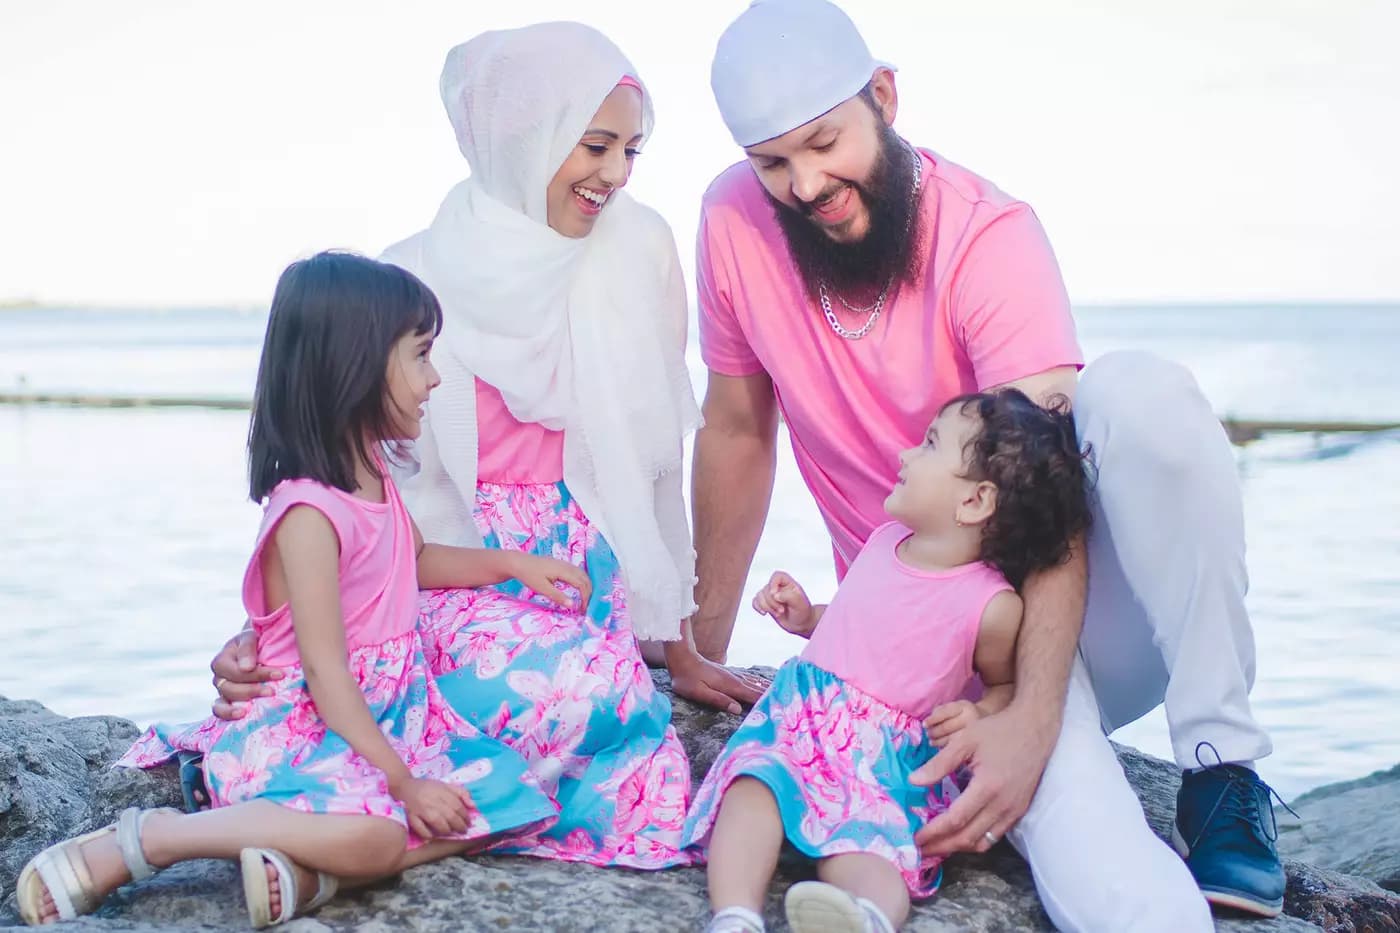 سوشیال مدیا راه را برای بیزینس مربوط به حجاب پیش روی این زن و شوهر مسلمان در تورنتو گذاشت